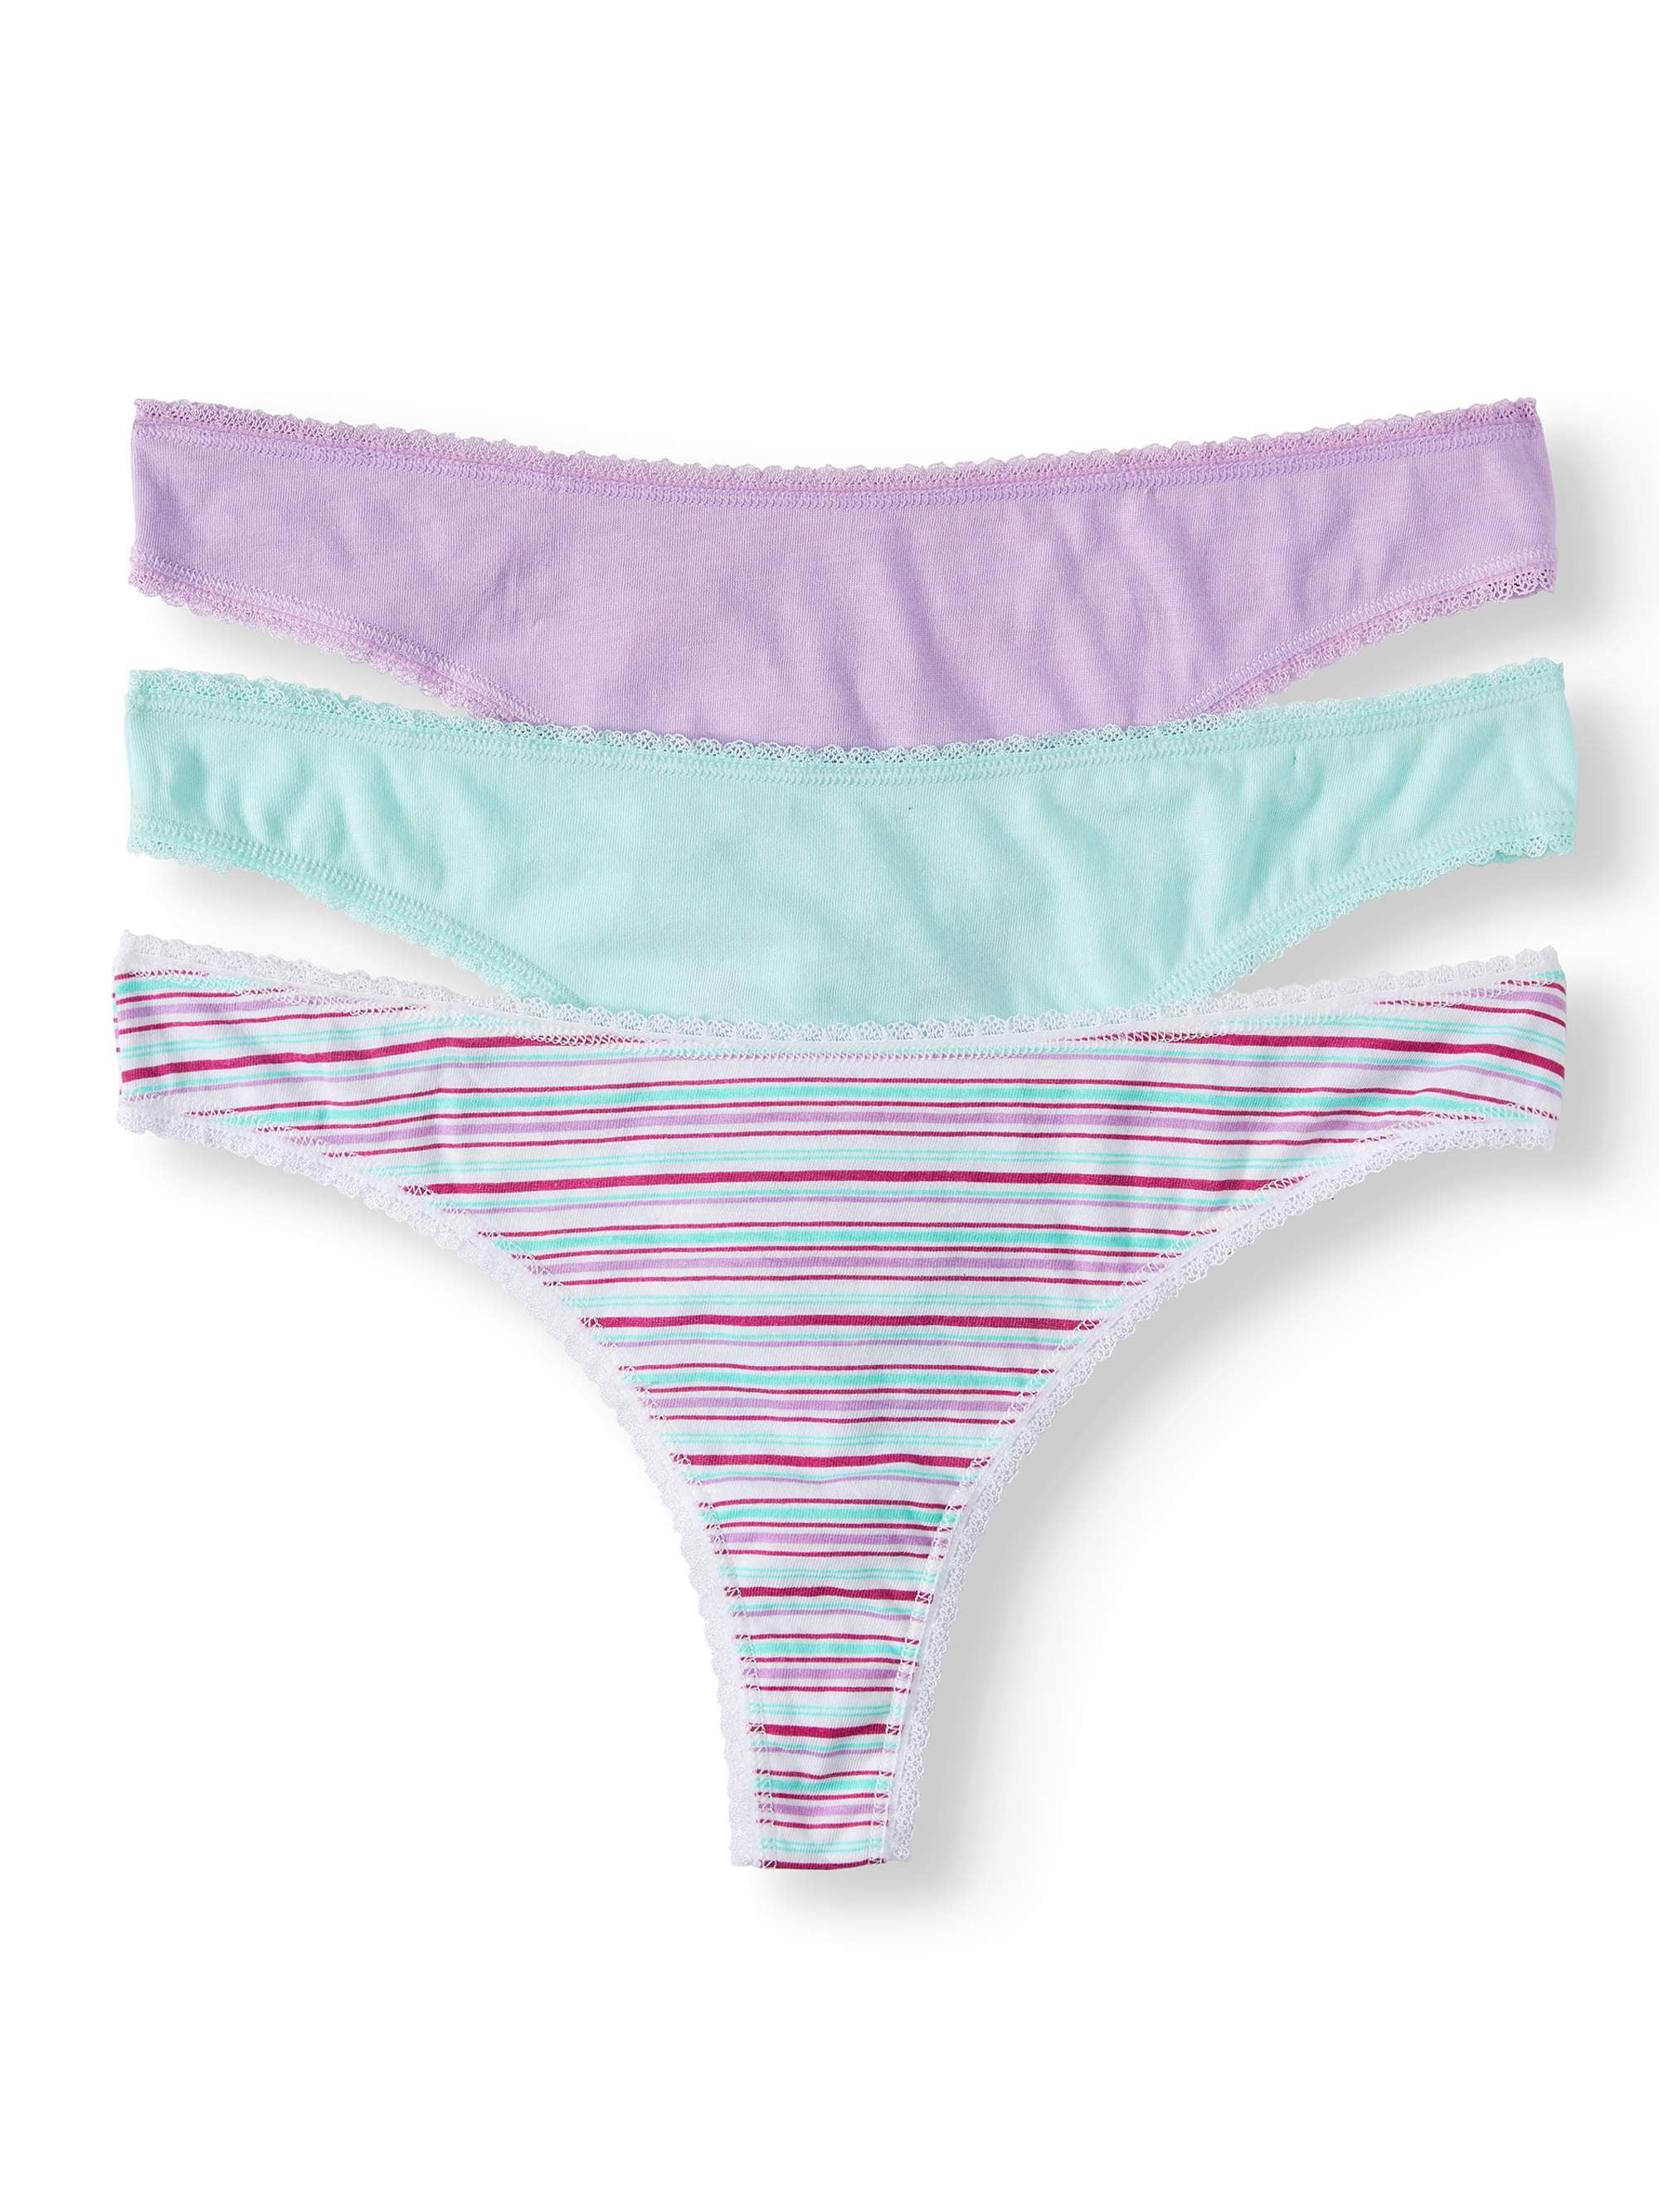 Secret Treasures Women's Simply Basic Thong Panties, 3 Pack - Walmart.com